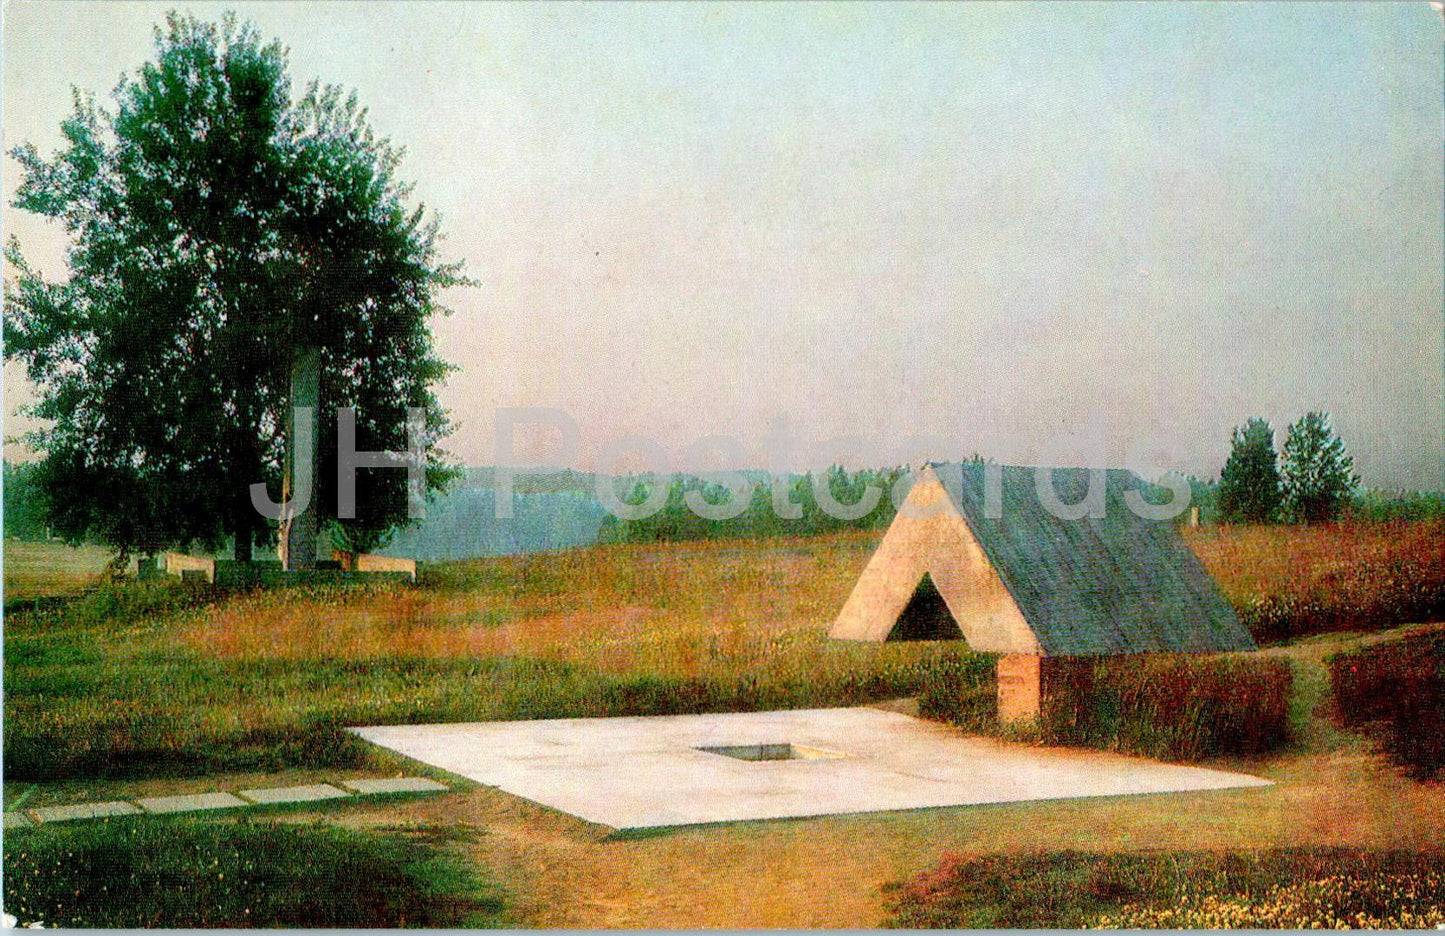 Complexe commémoratif de Khatyn - Mémorial sur le site d'un puits de tirage -1980 - Biélorussie URSS - inutilisé 